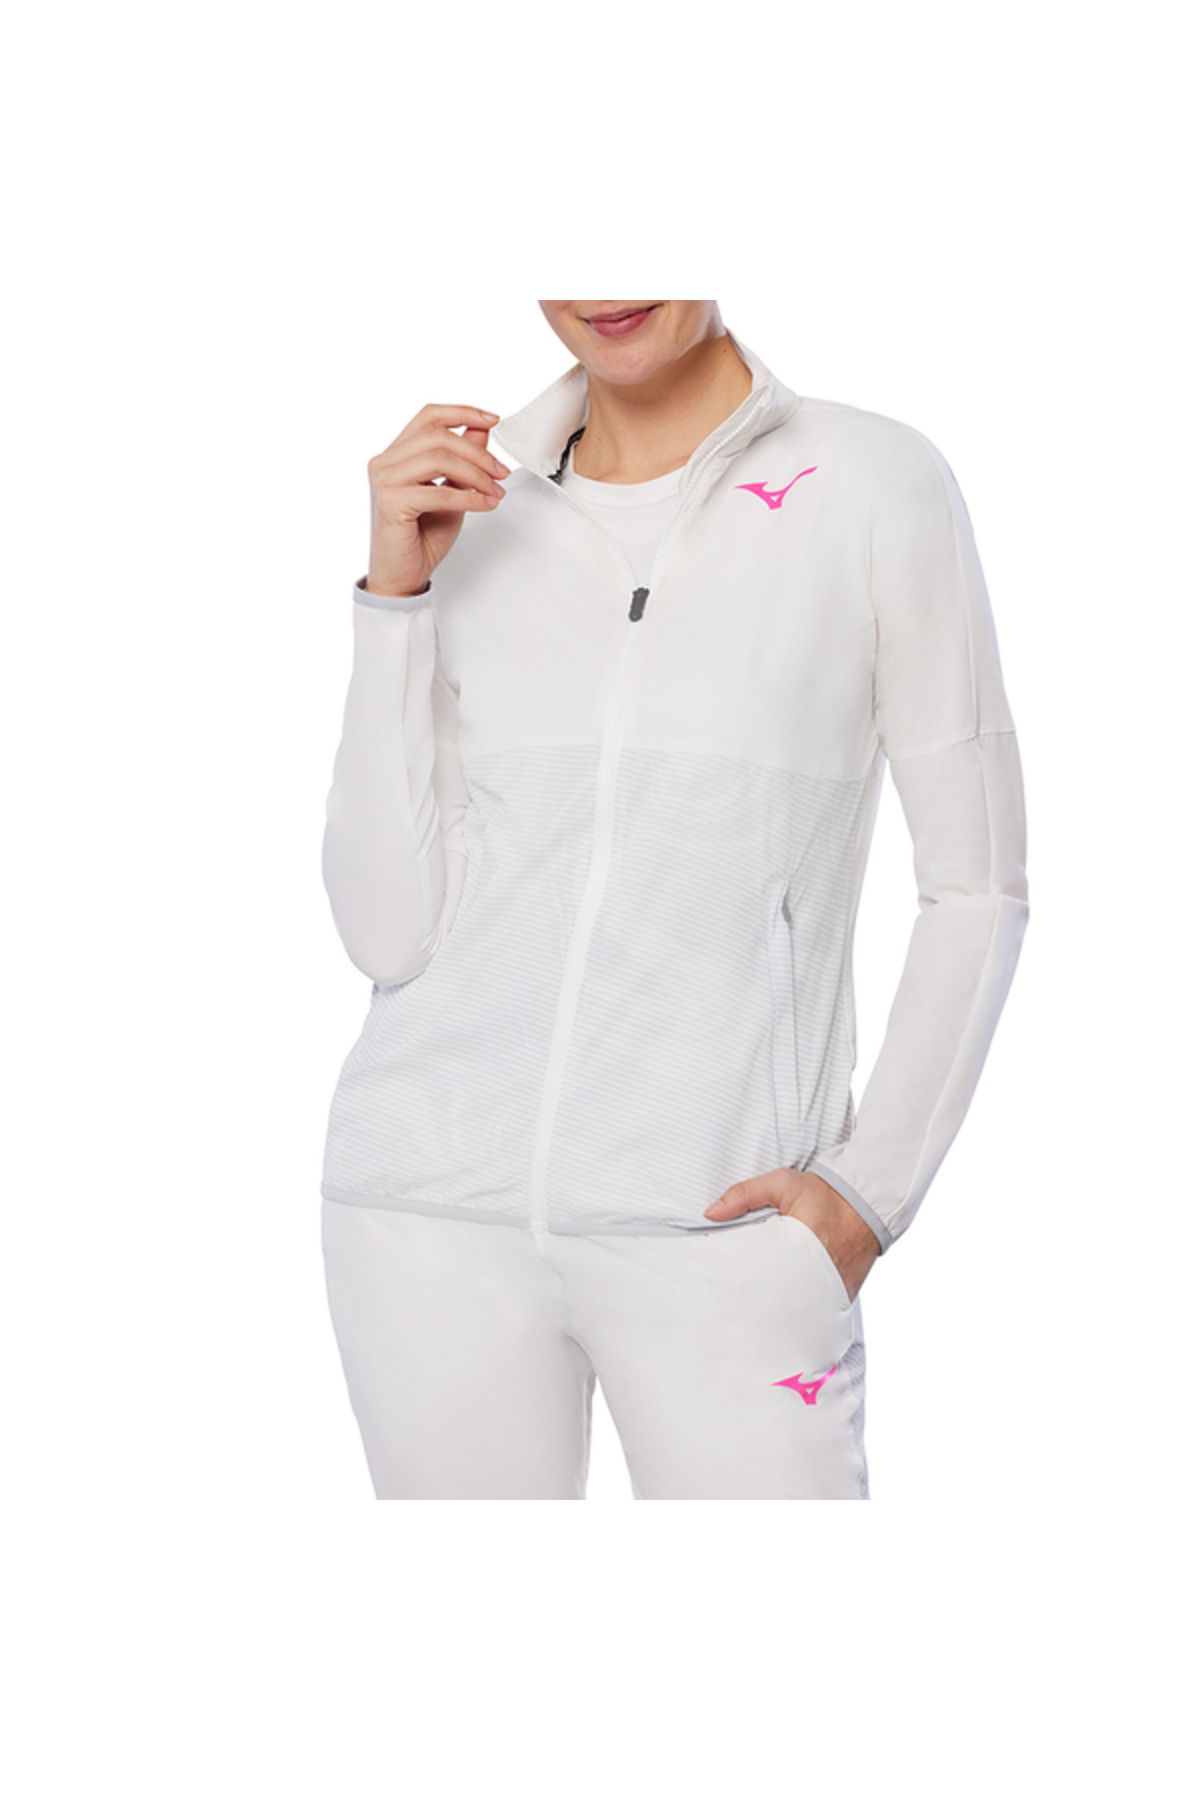 Mizuno Charge Printed Jacket Kadın Yağmurluk Beyaz